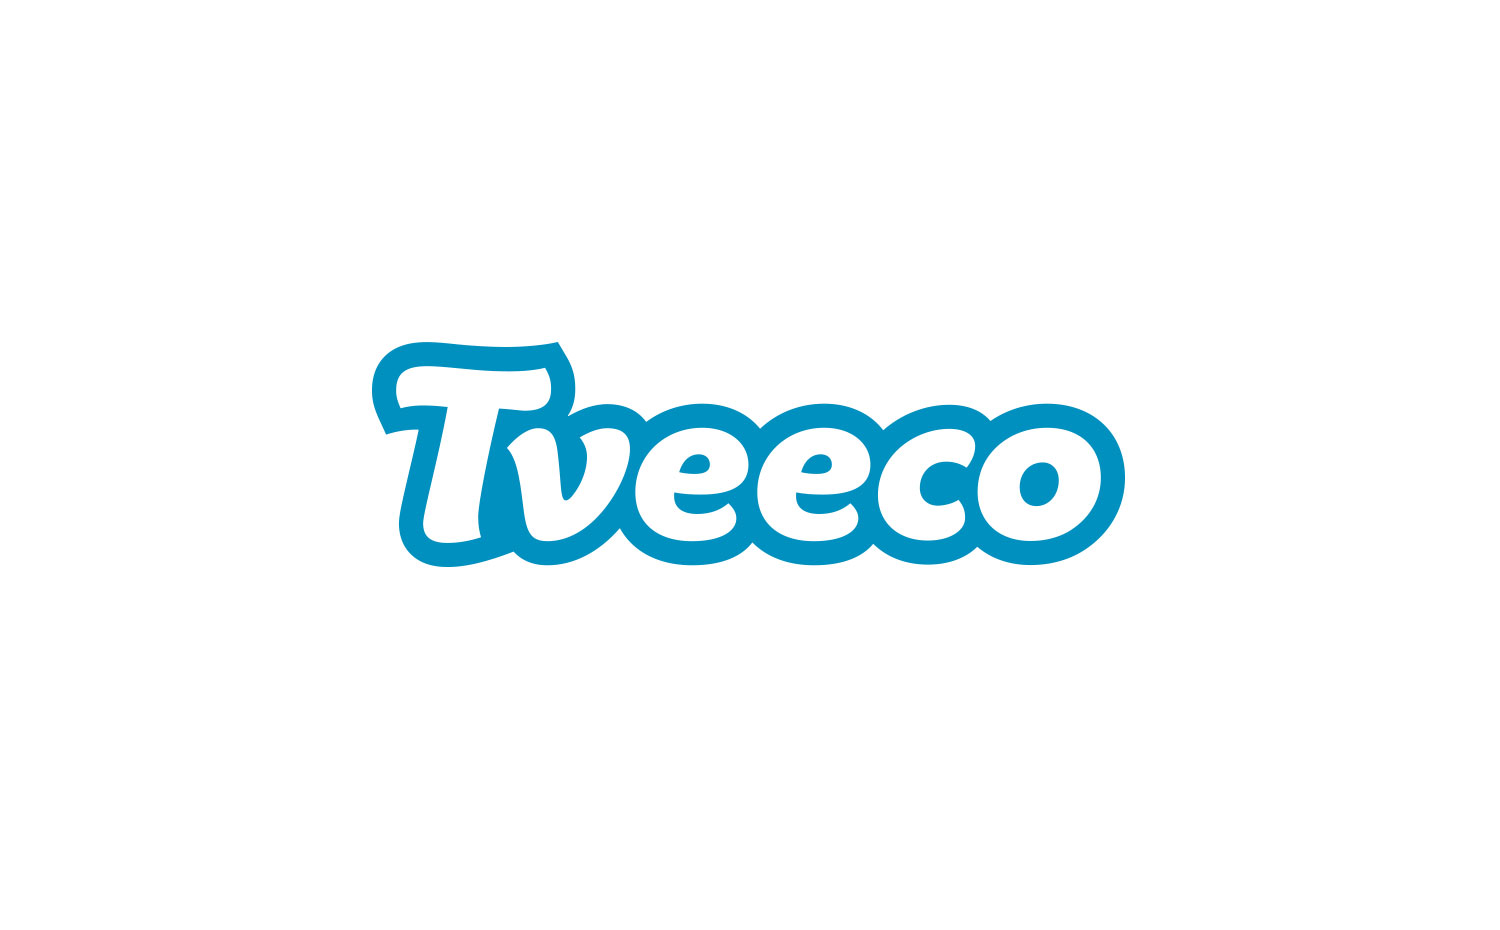 Tveeco identity wordmark